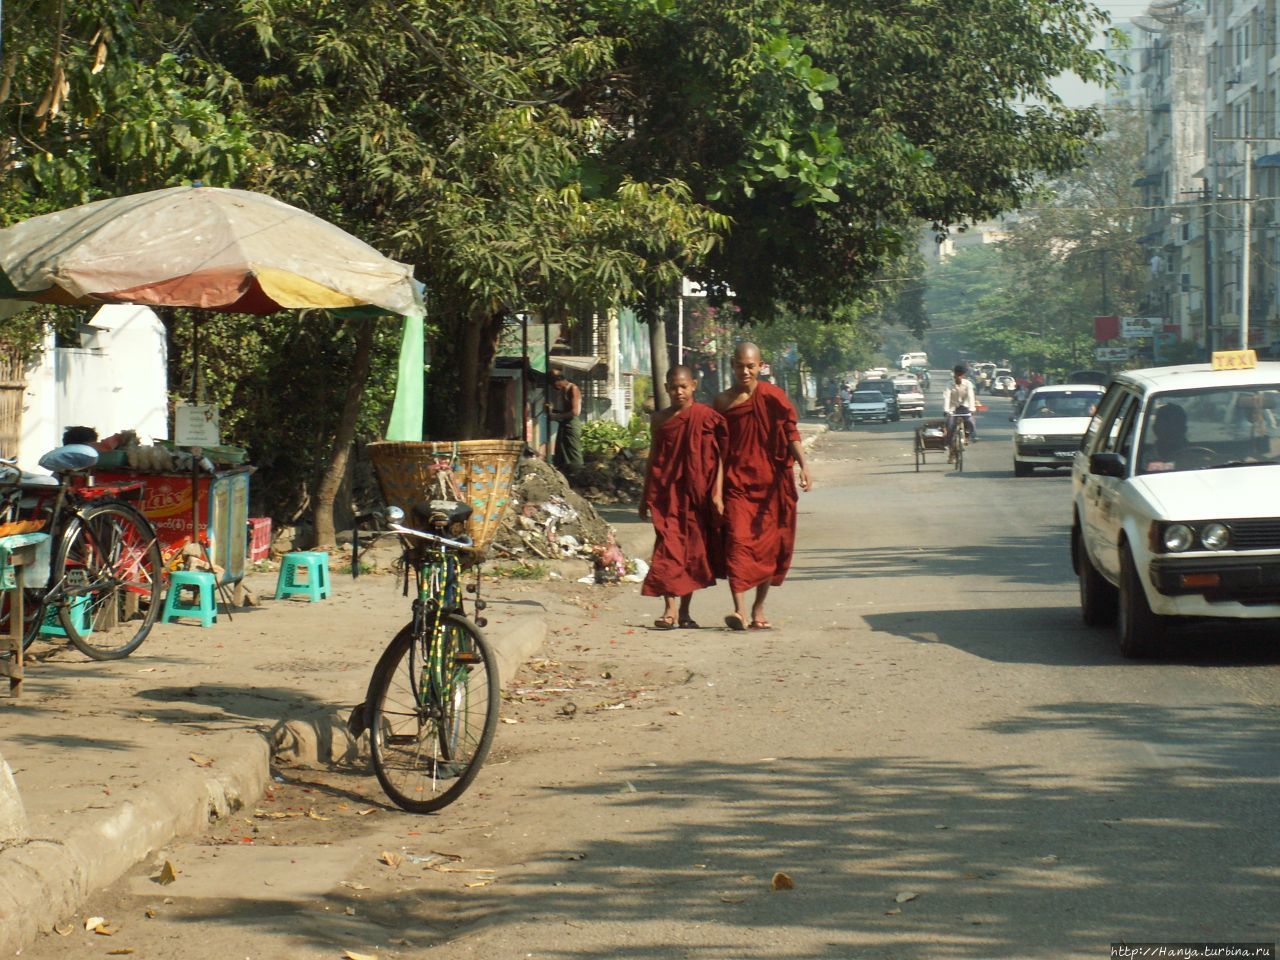 Монахи на улице Янгуна Янгон, Мьянма